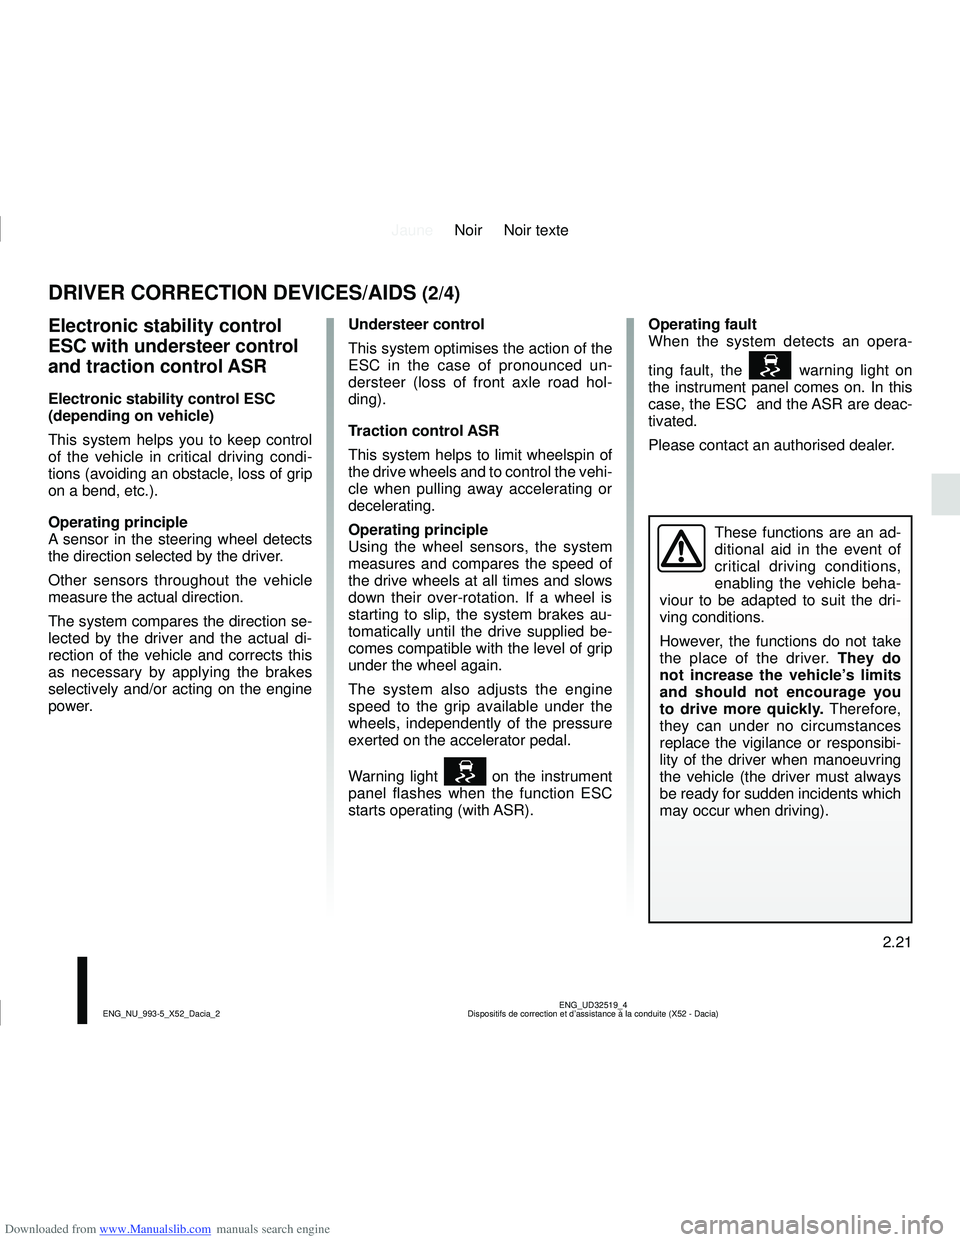 DACIA LOGAN 2014 Owners Guide Downloaded from www.Manualslib.com manuals search engine JauneNoir Noir texte
2.21
ENG_UD32519_4
Dispositifs de correction et d’assistance à la conduite (X52 - Da\
cia)
ENG_NU_993-5_X52_Dacia_2
DRI